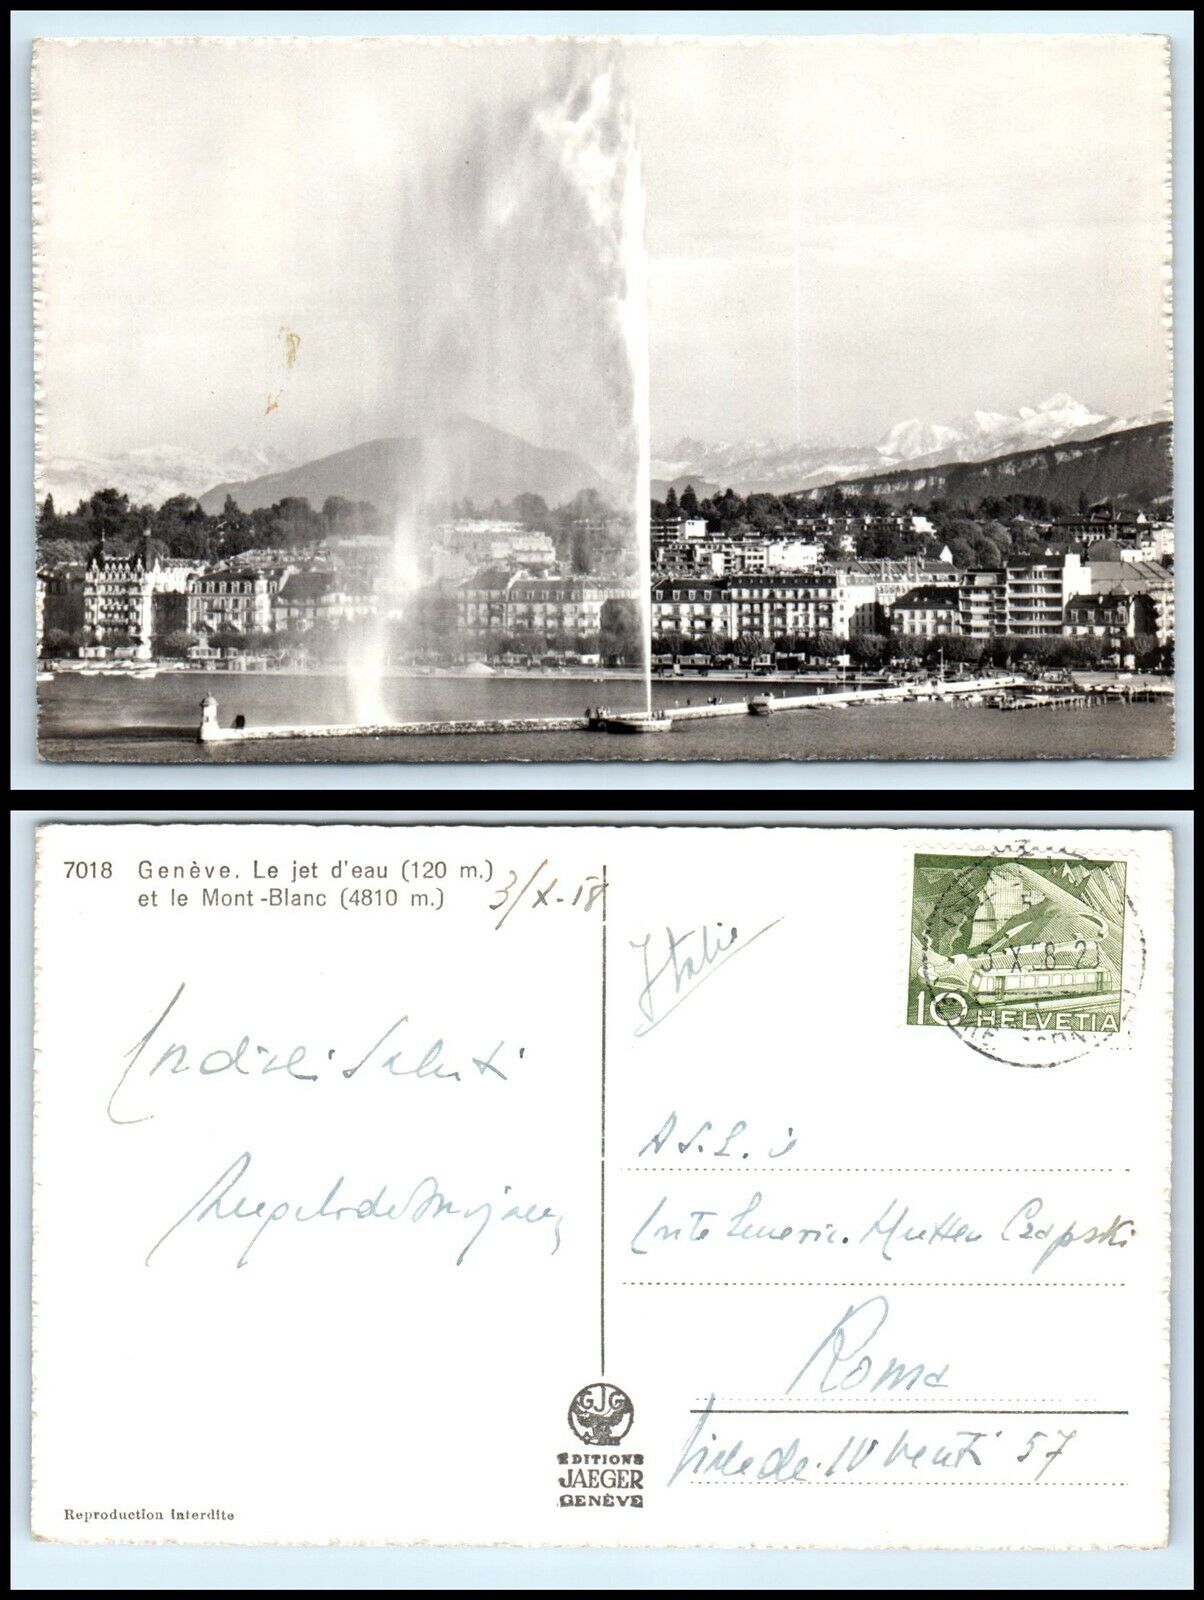 SWITZERLAND RPPC Photo Postcard - Geneva, Le jet d'eau et le Mont Blanc FW